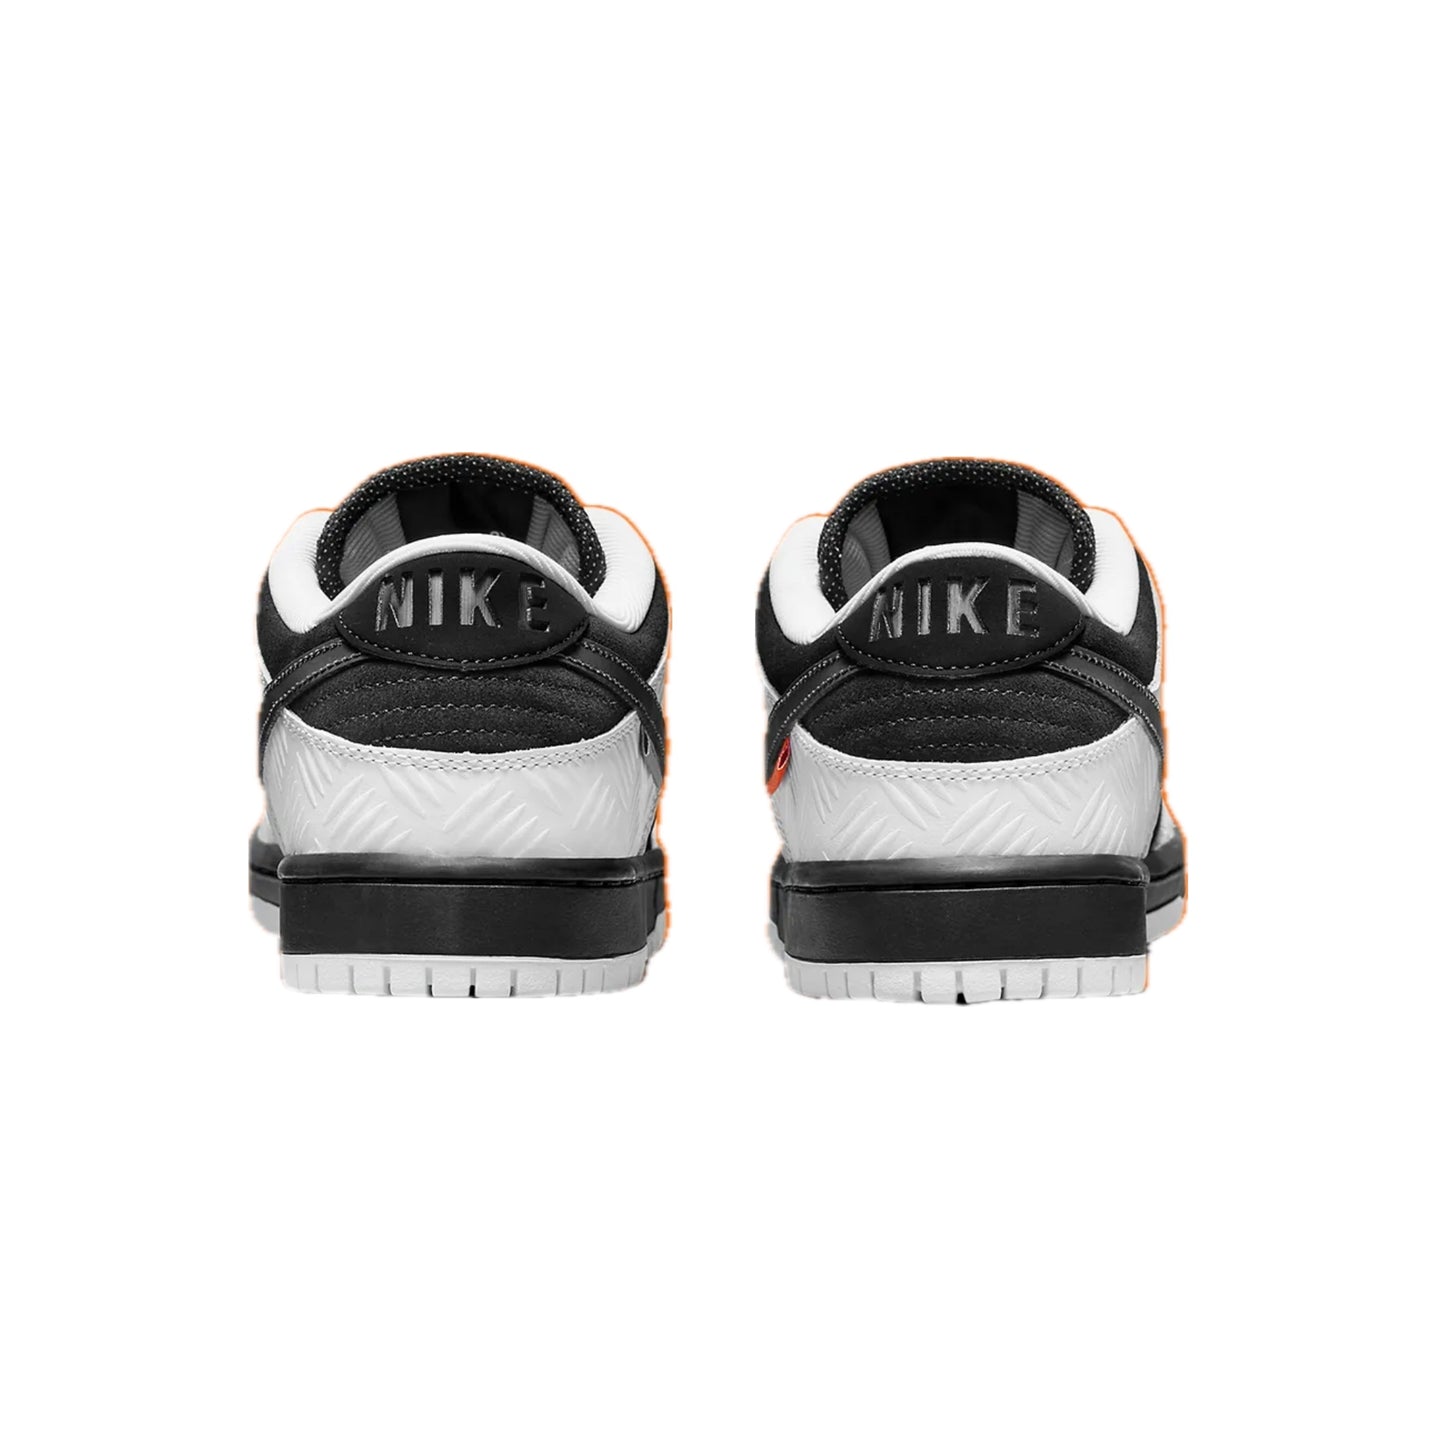 Nike SB Dunk Low Tightbooth White Black Safety Orange